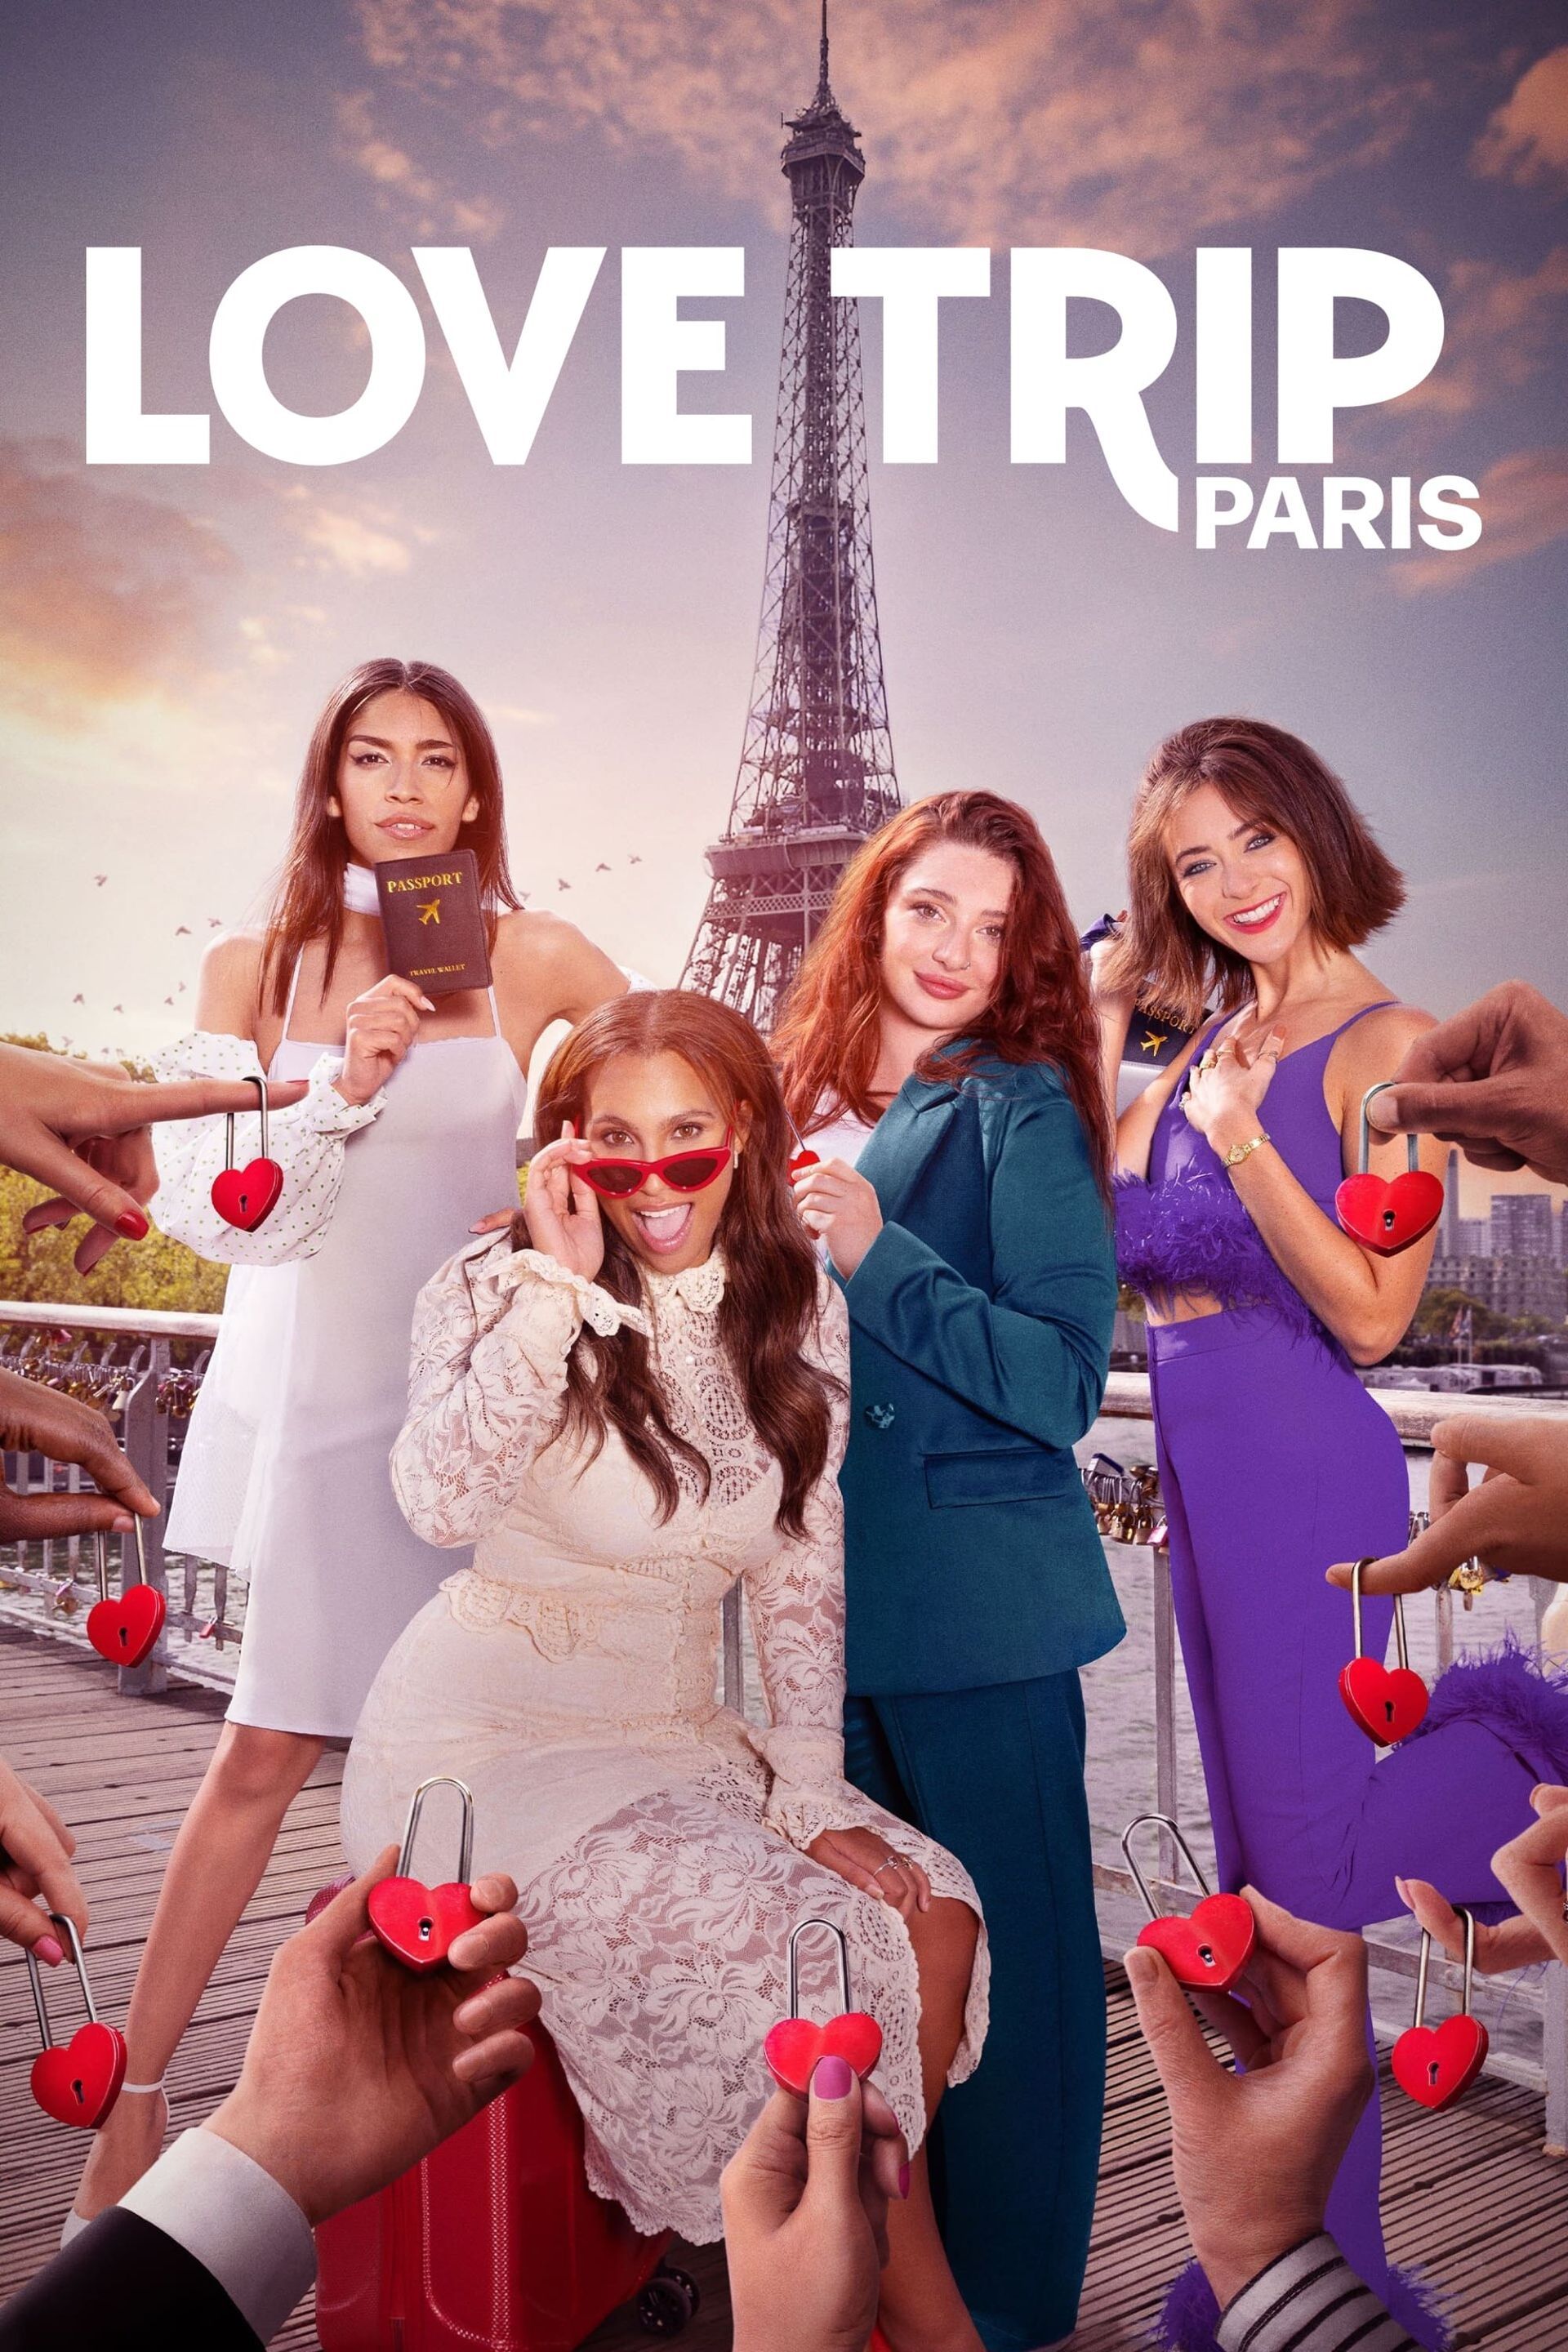 love trip paris watch online free